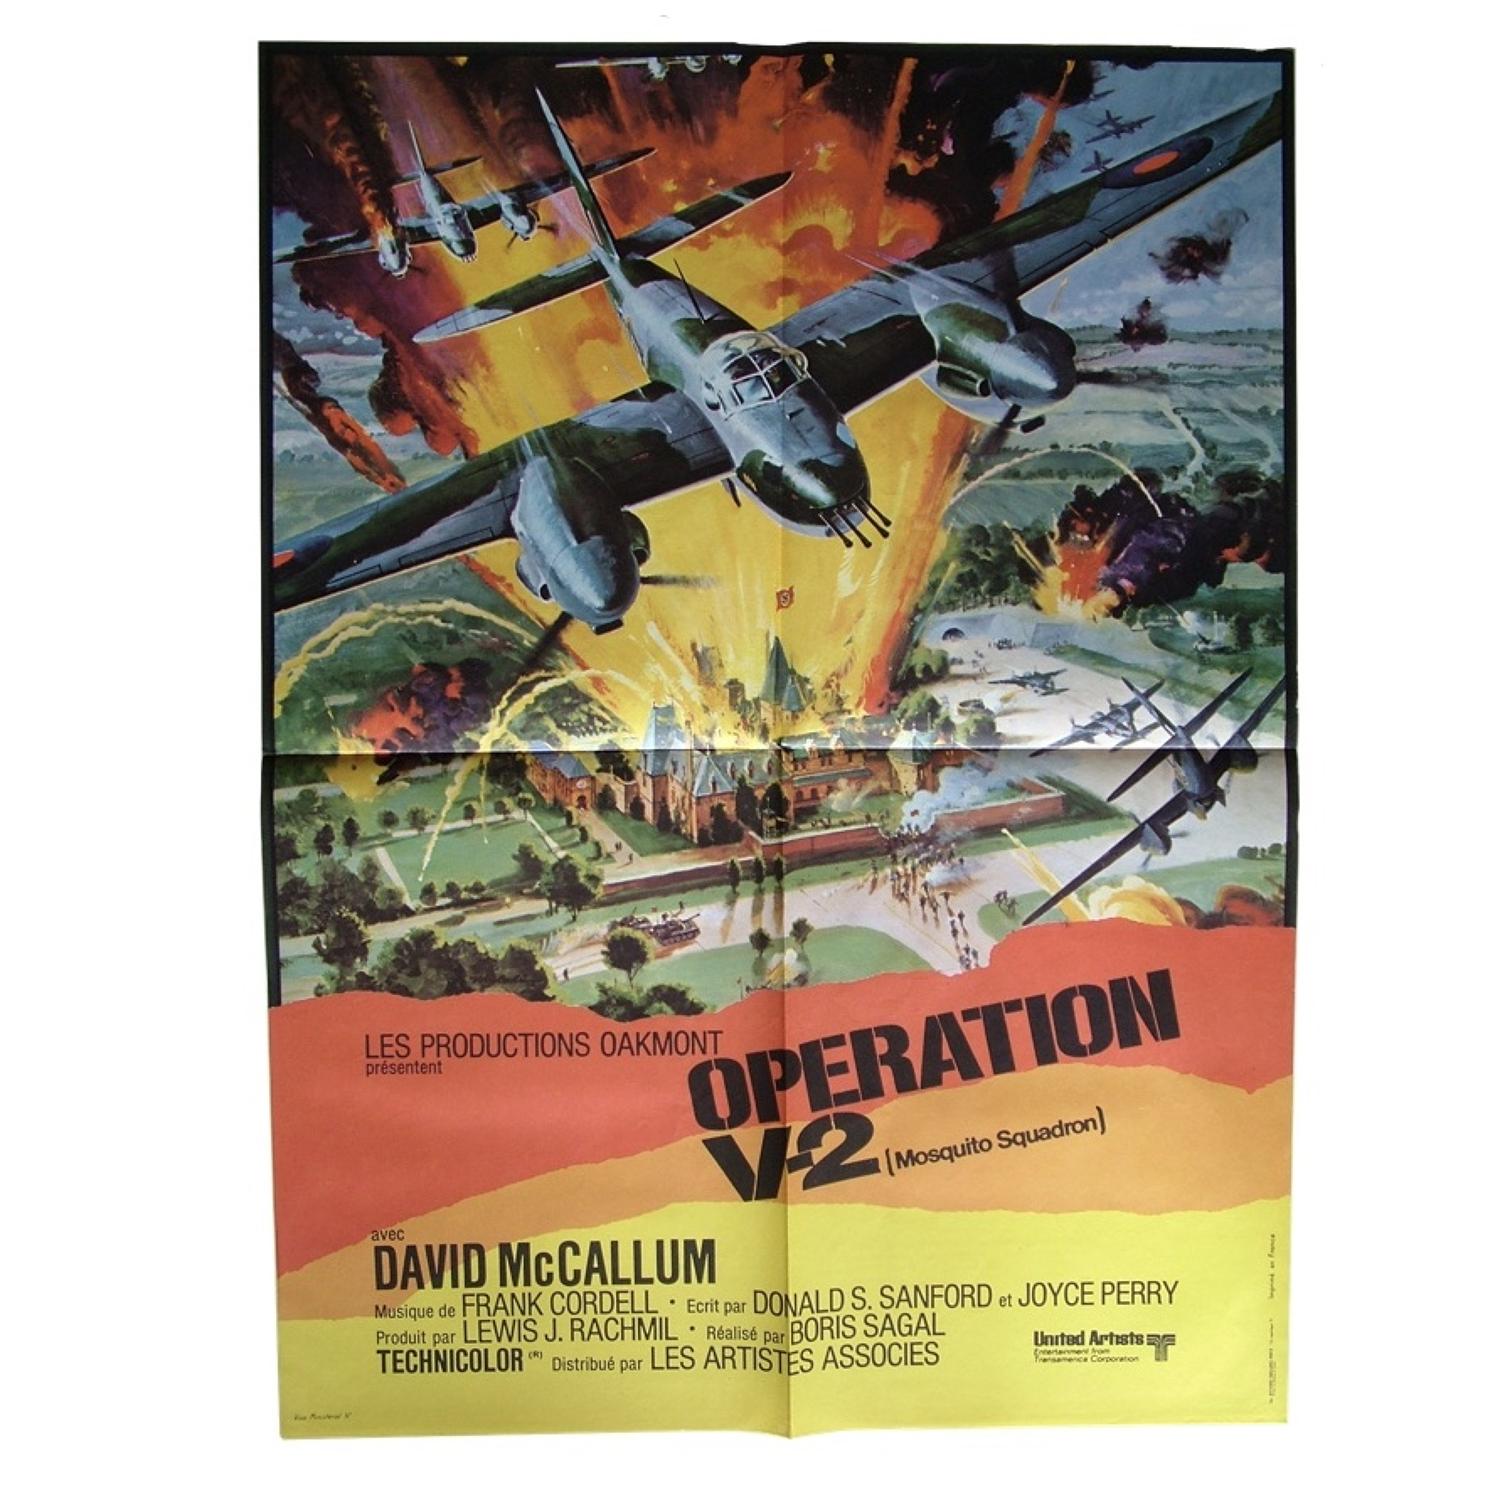 Original Mosquito Squadron film poster